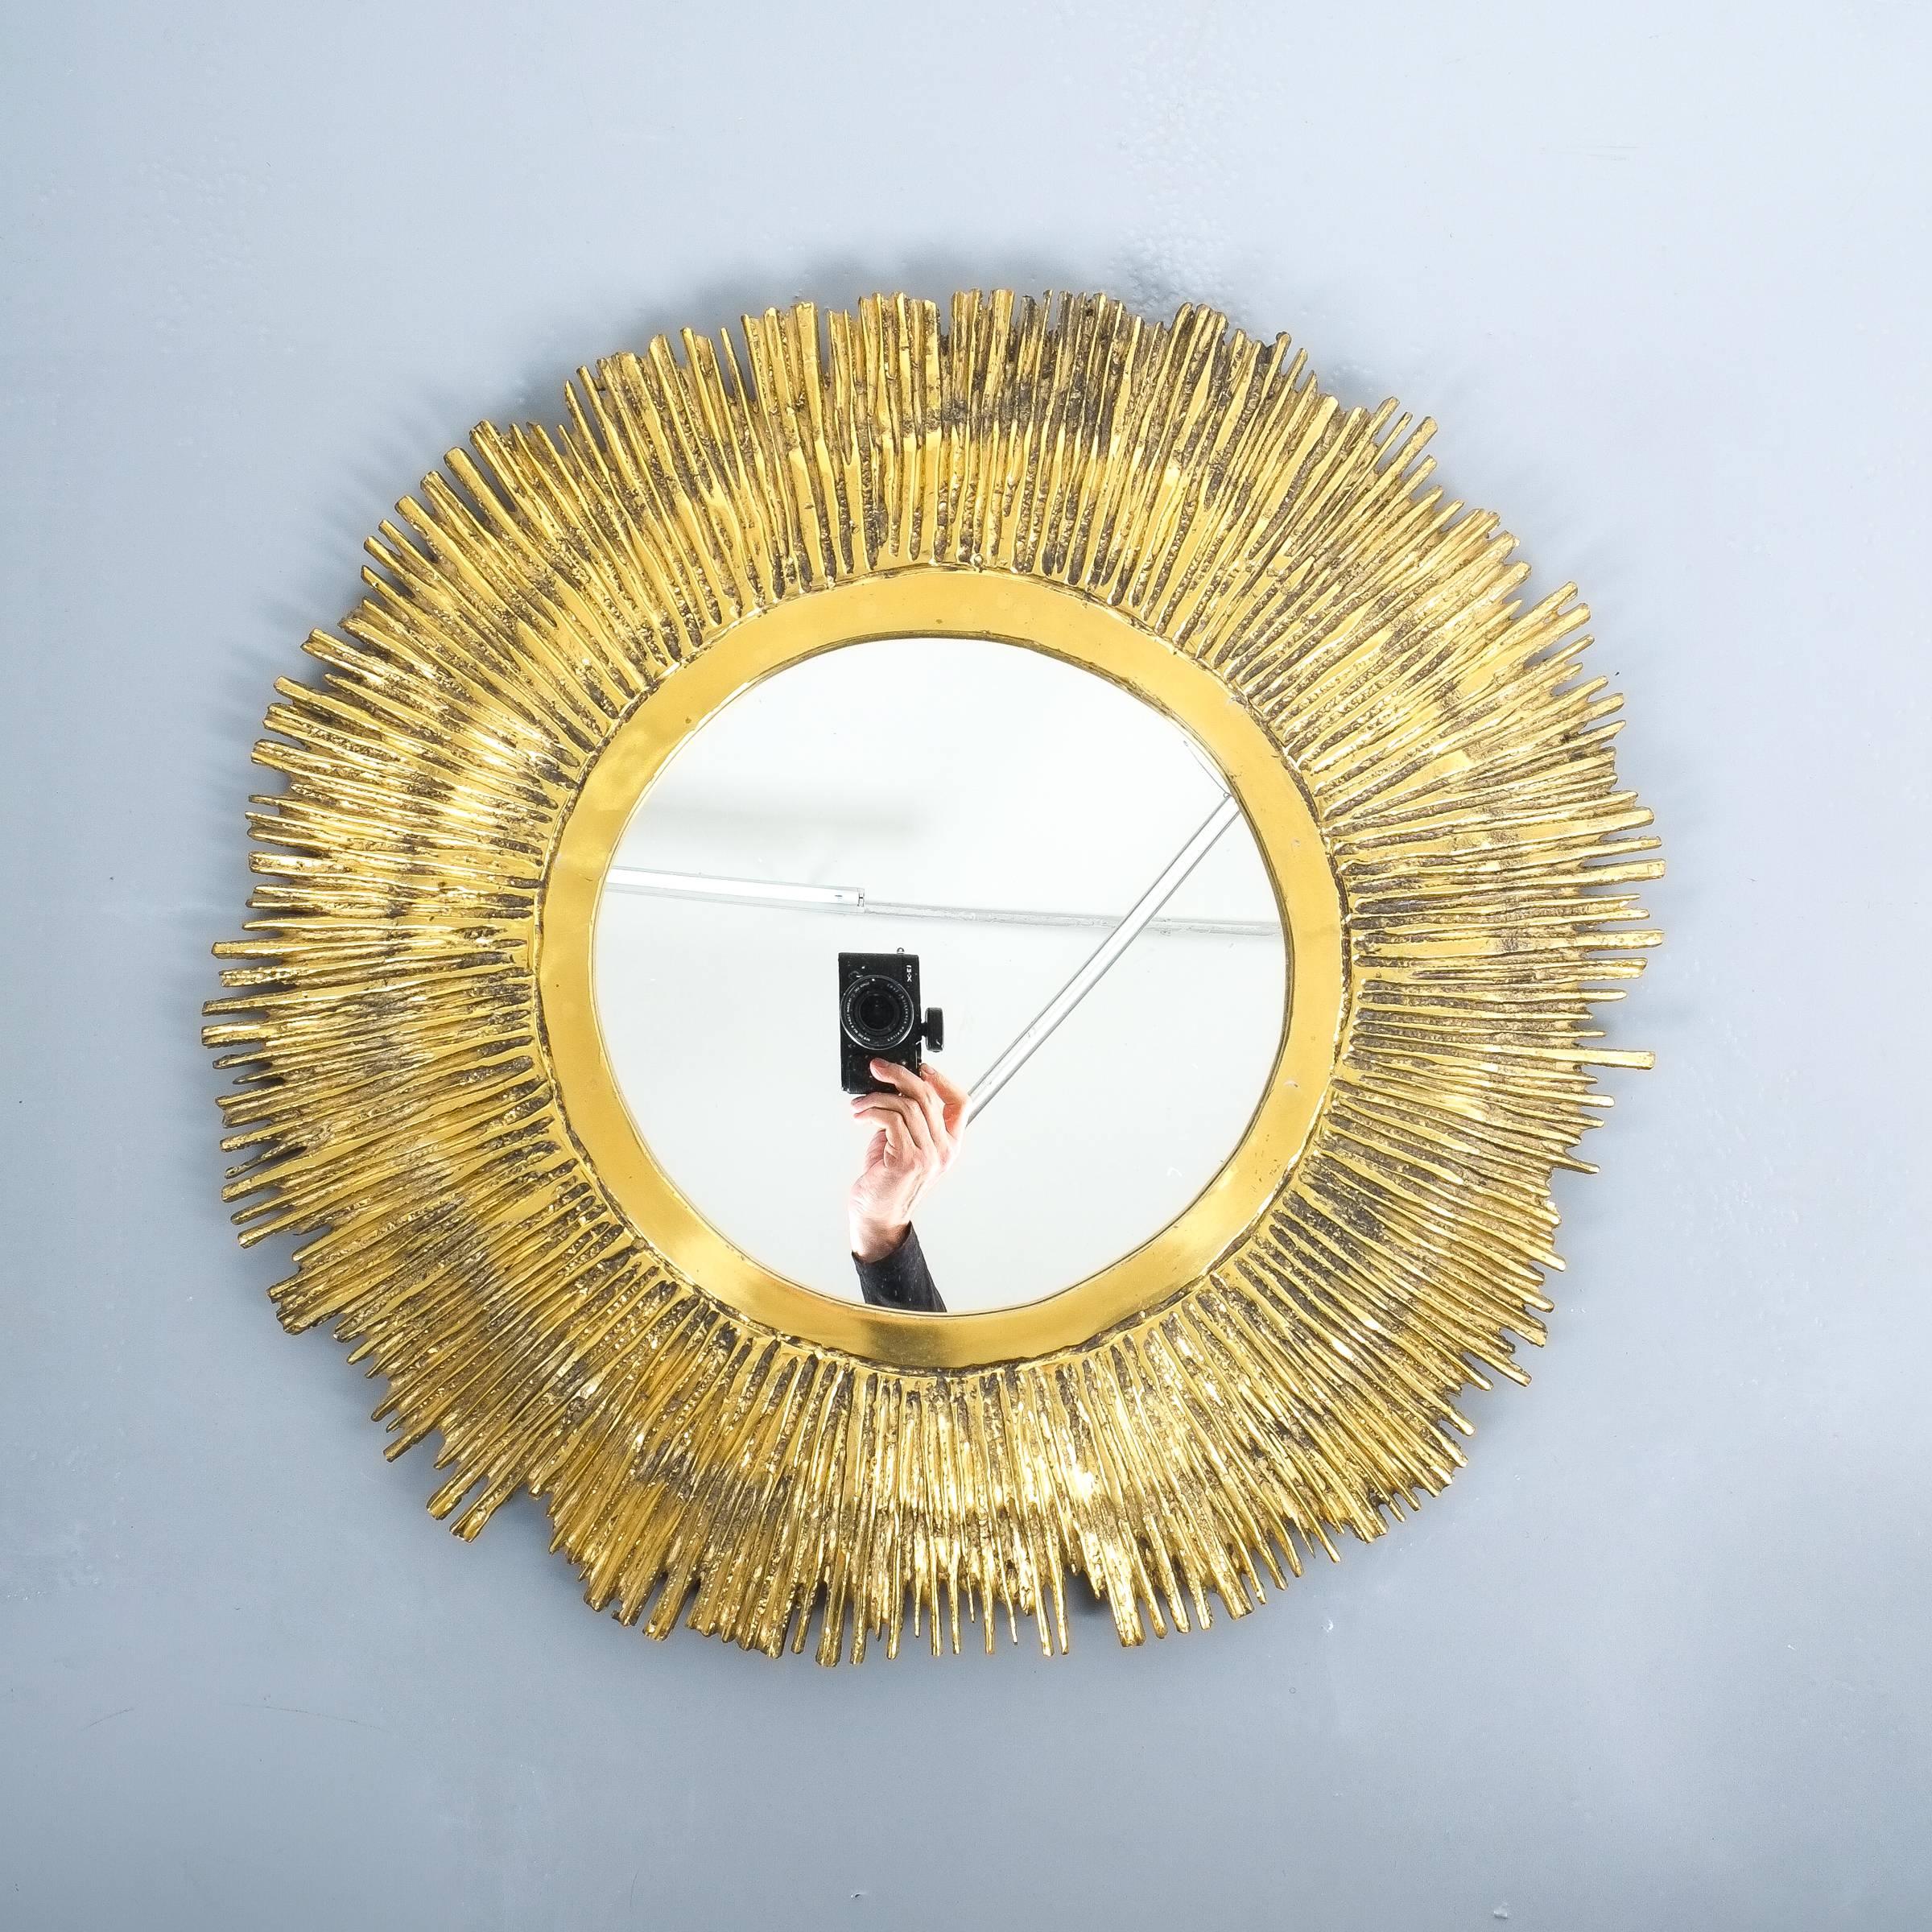 Impressionnant miroir en laiton massif de 24 pouces, dans le style de Curtis Jere, vers 1955, avec un cadre en laiton coulé lourd et solide, fait à la main, avec un miroir incrusté de 11,8 pouces. Le miroir pèse de 8 à 10 kg environ. Très bon état.